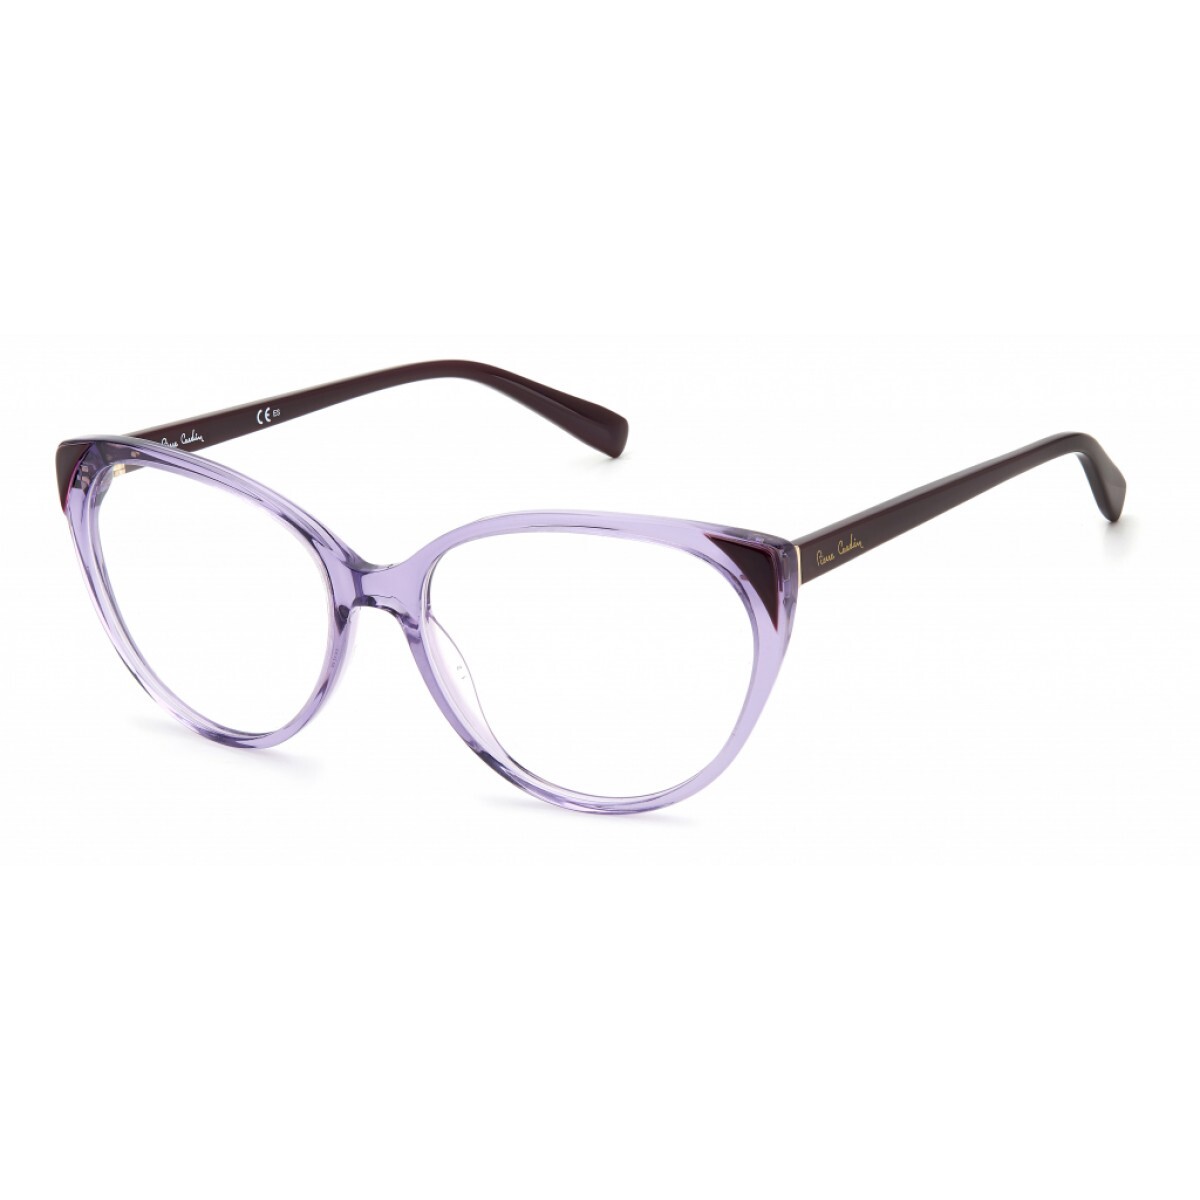 Очки Pierre Cardin 6870. Пластиковая оправа для очков. Модель оправы для очков d 3287624. Женские очки+2 оправа цвет пудра.